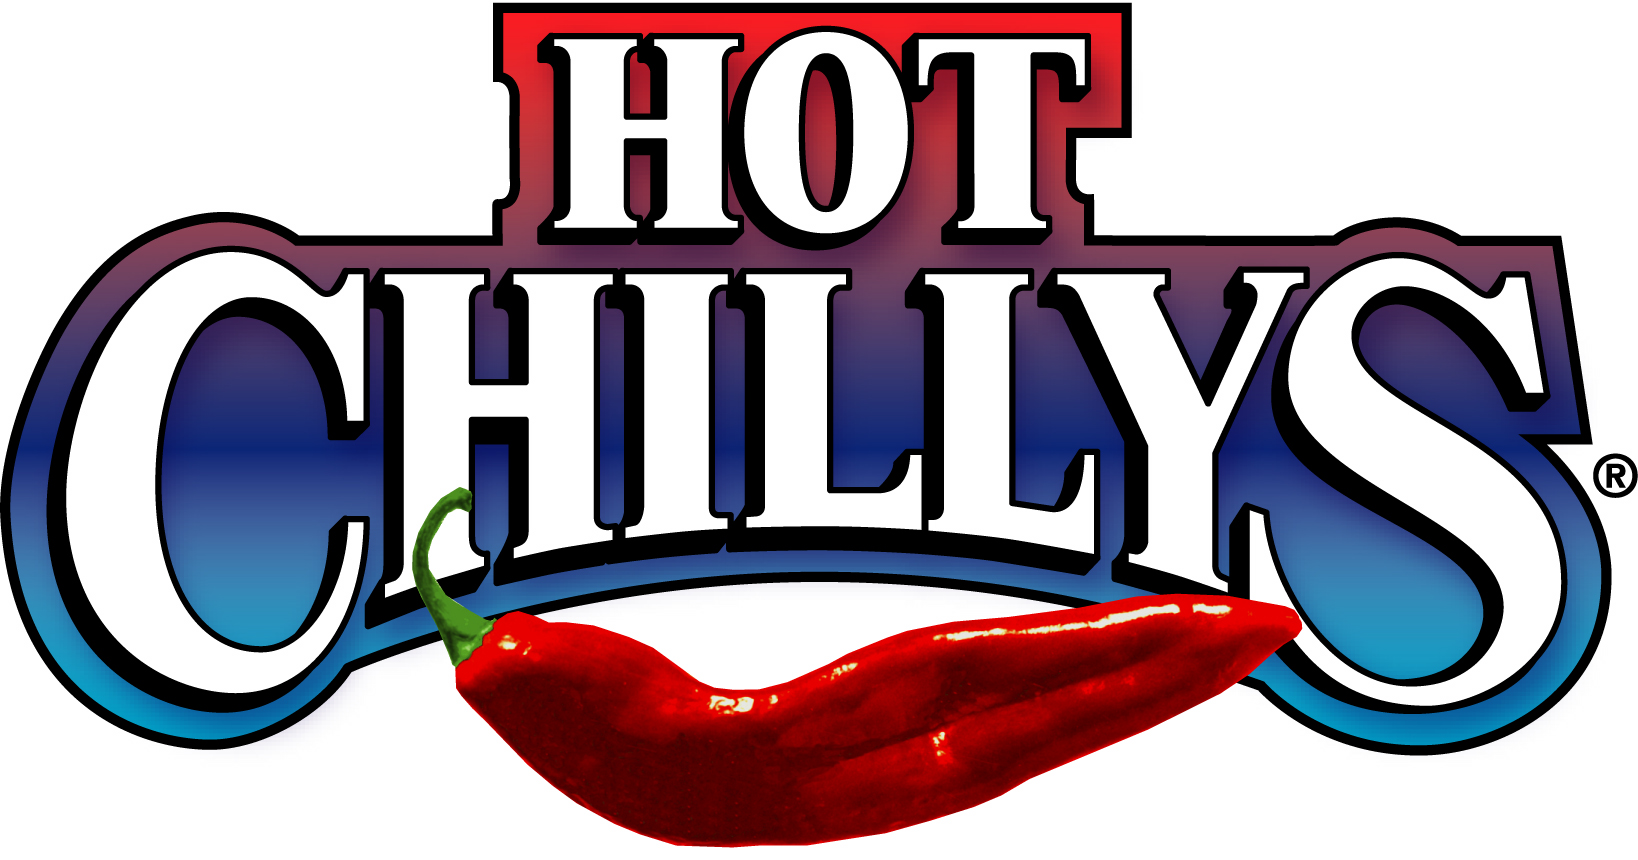 15Hot Chillys logo.jpg